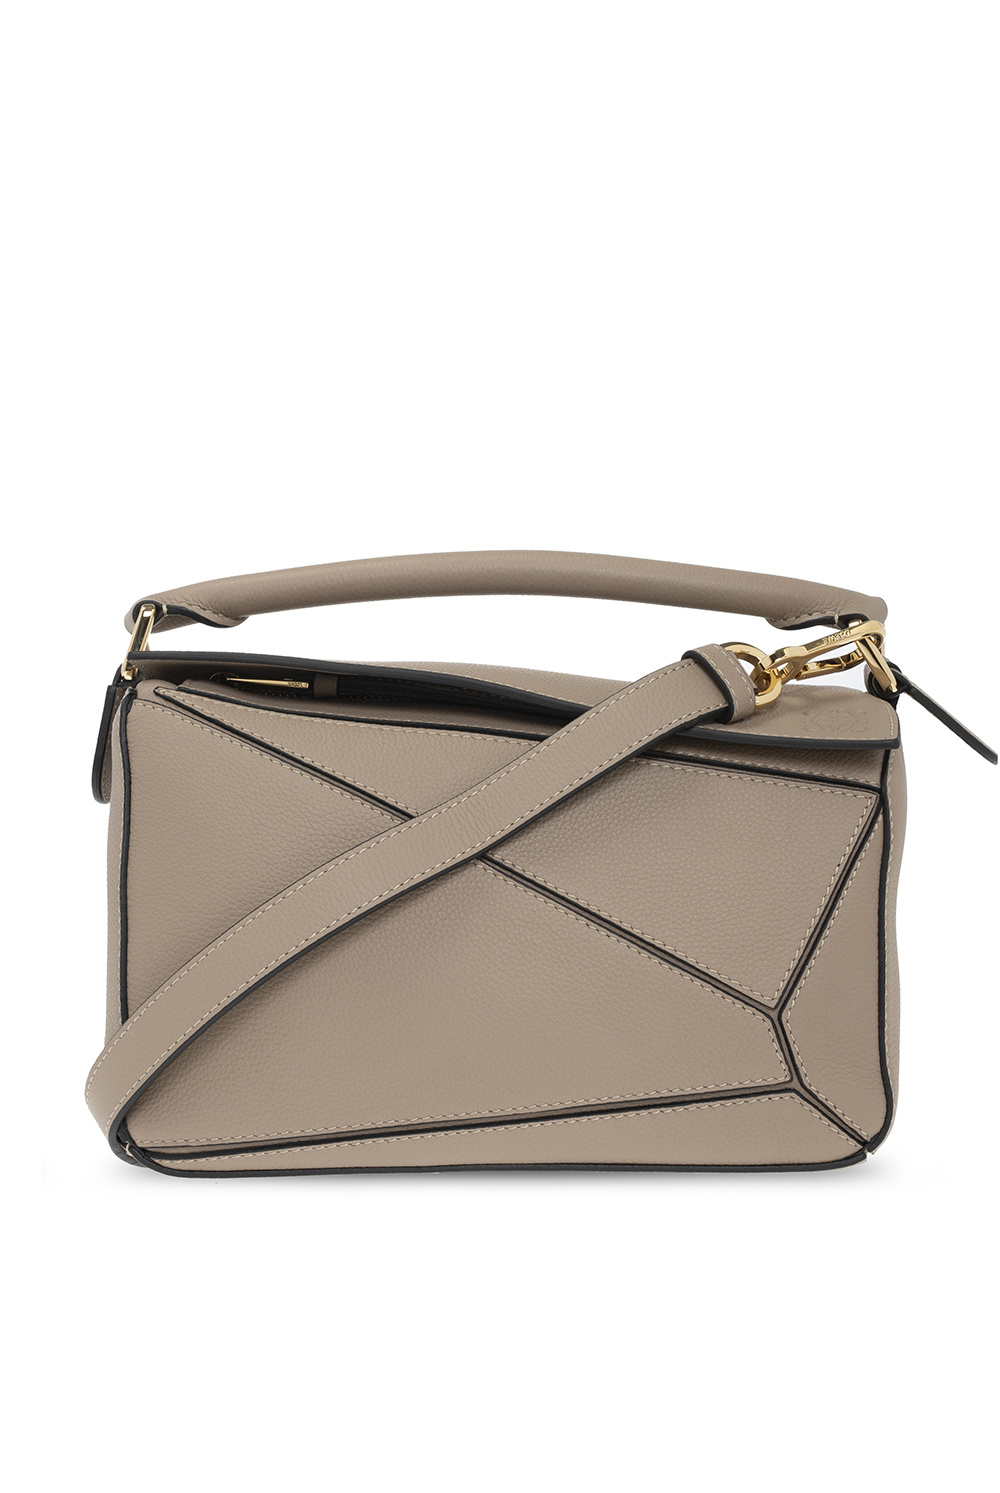 Loewe Puzzle Bag - 2015 Trends